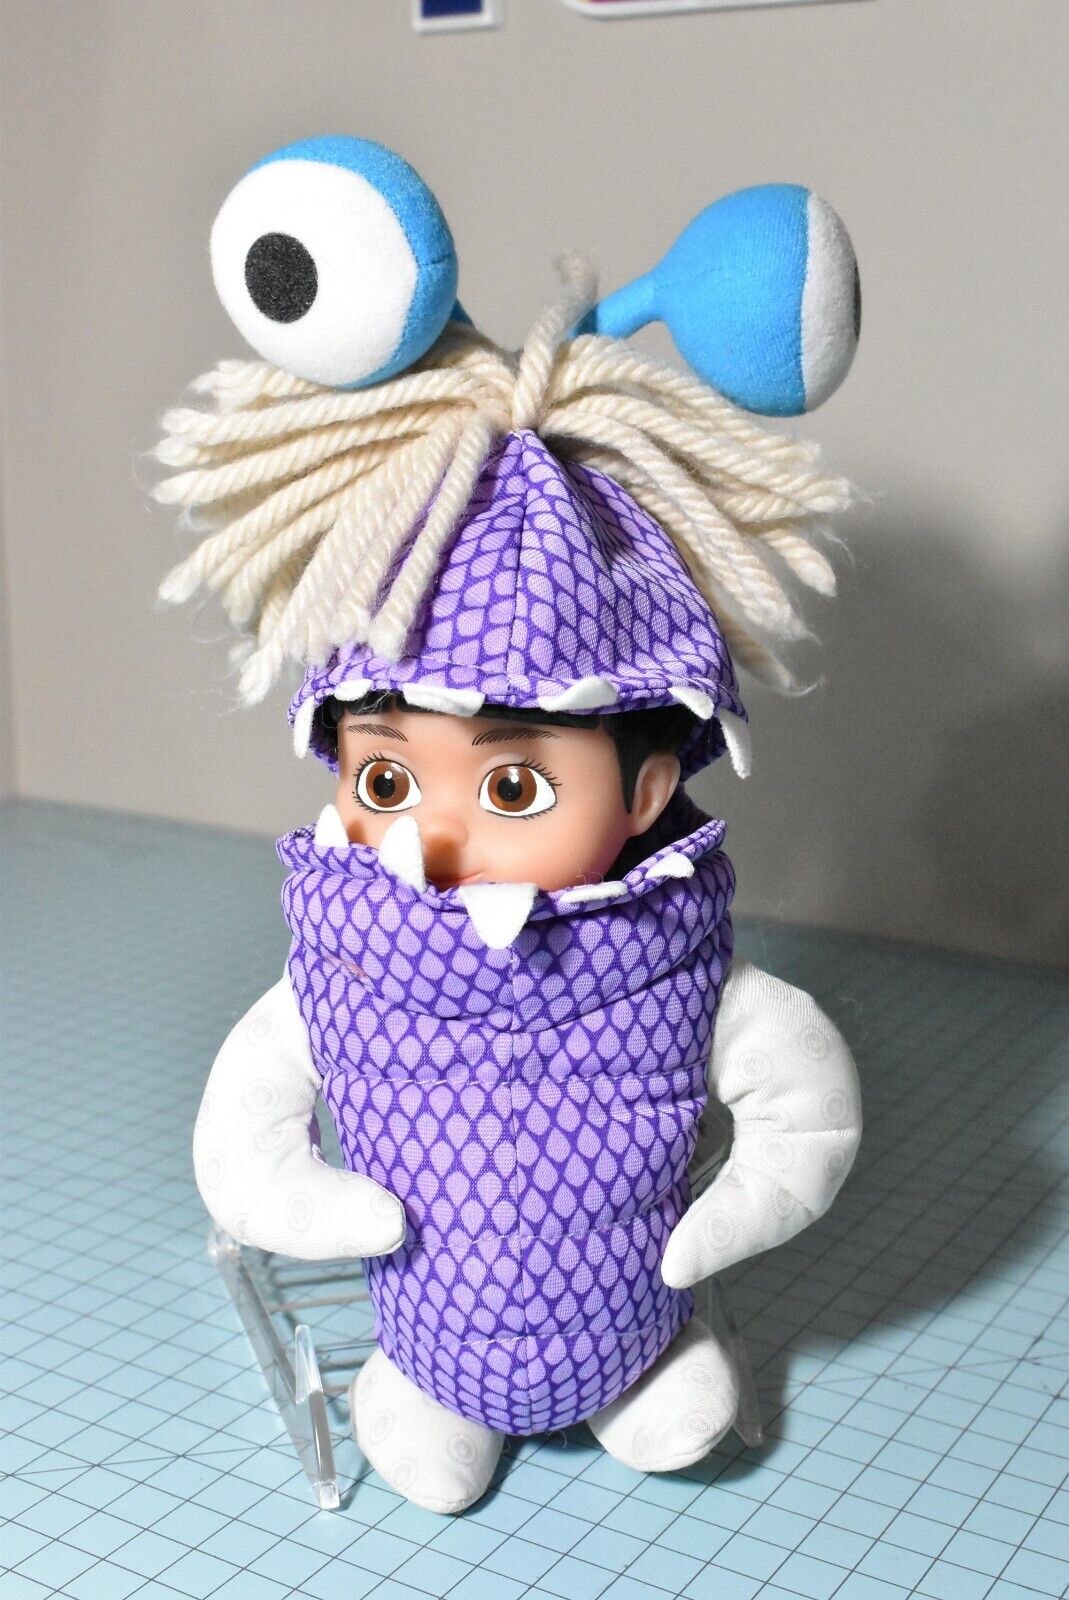 Disney Pixar Monsters Inc Boo in Monster Costume Plush Doll Original Hasbro 2001